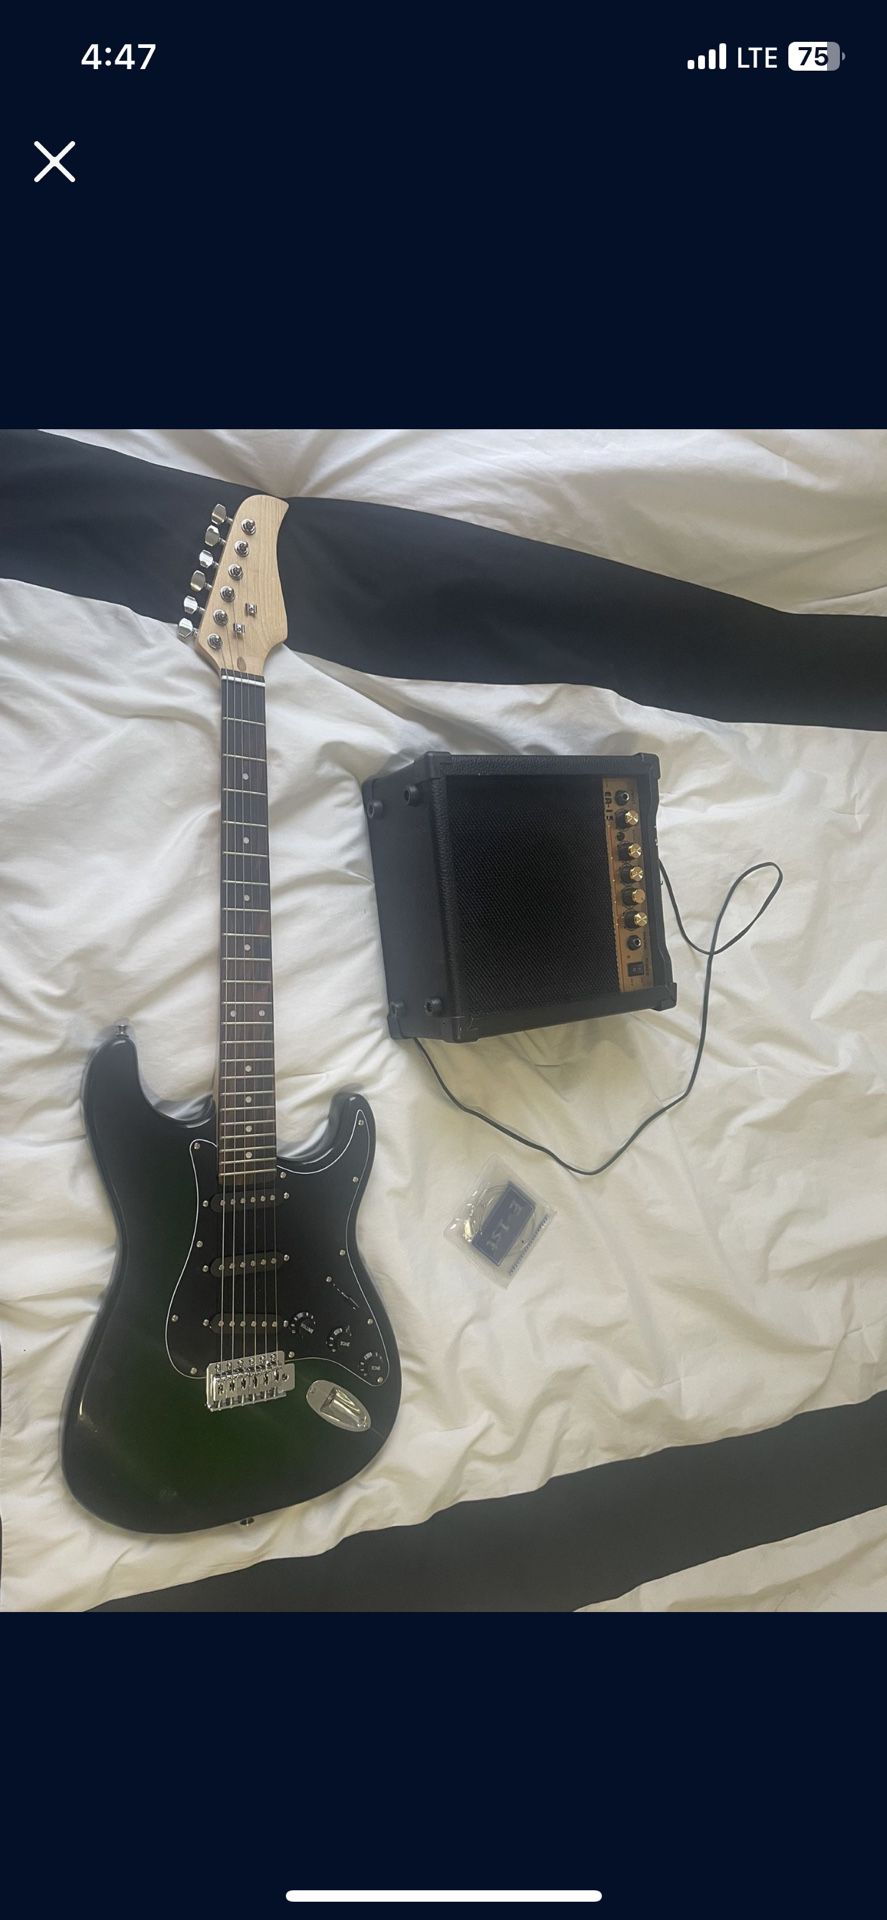 Beginner Guitar And Amp